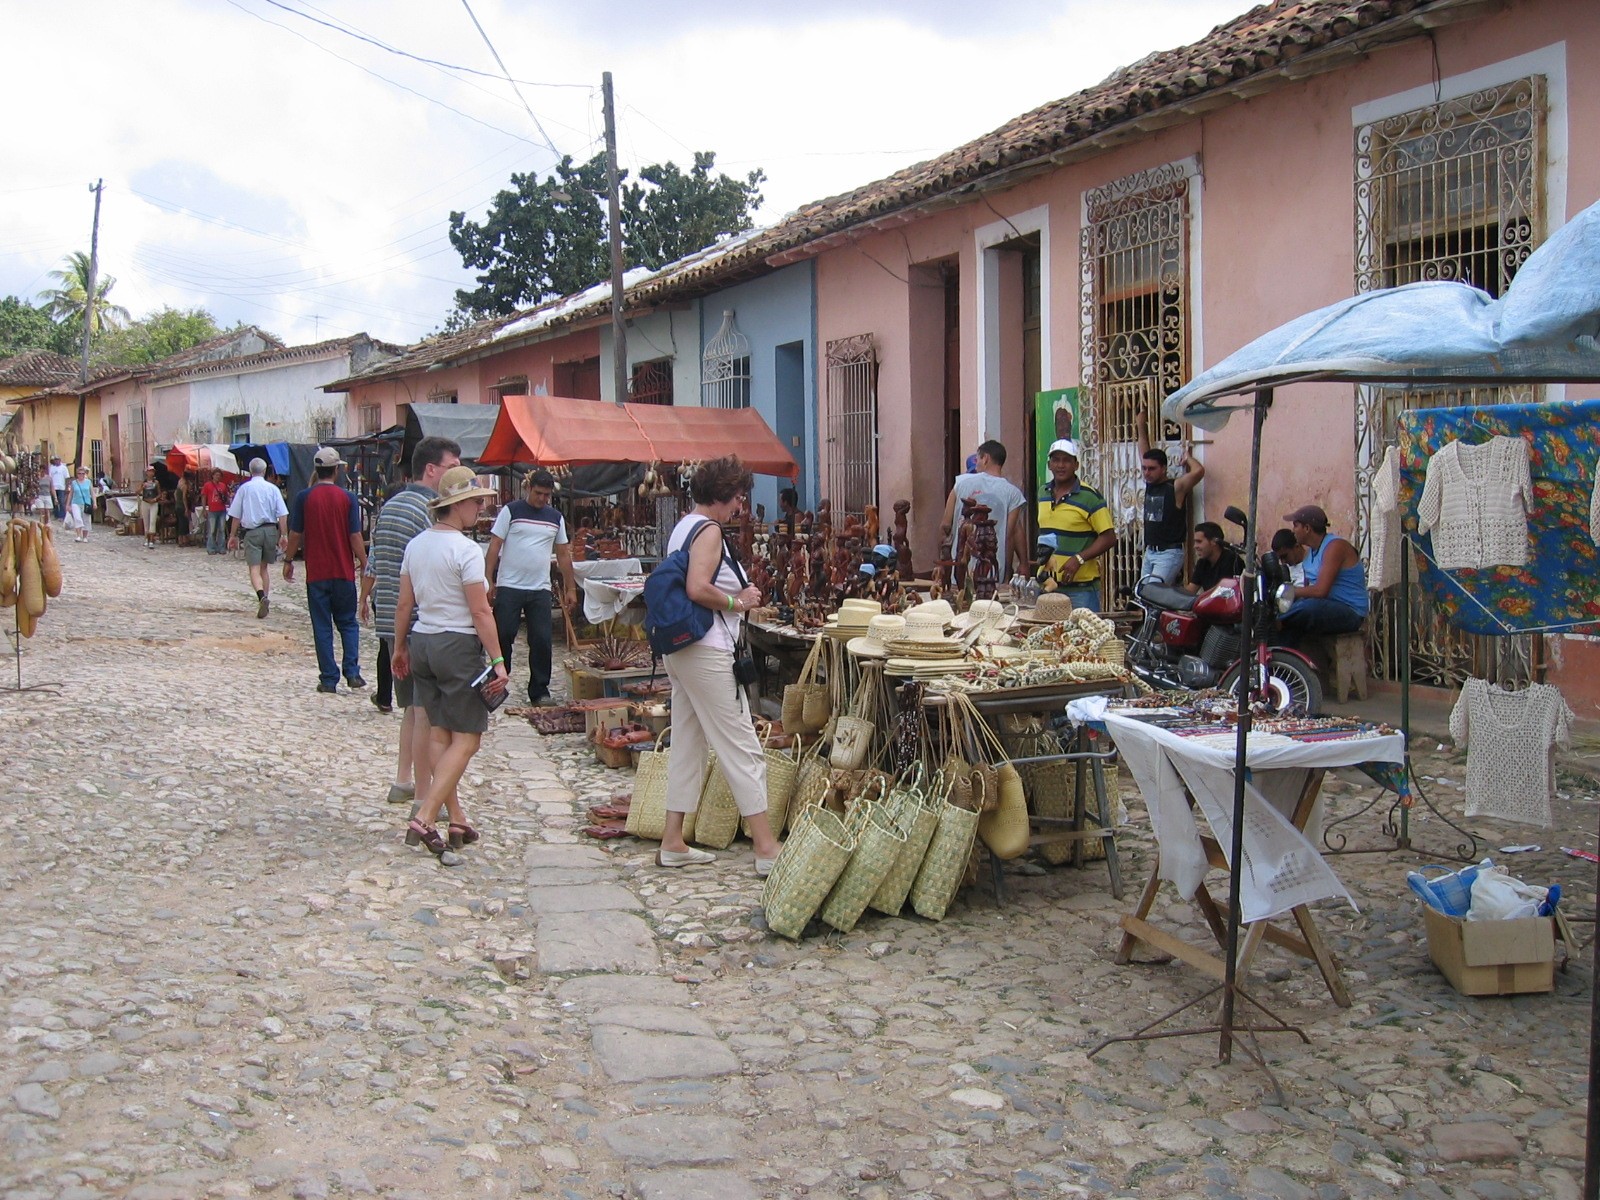 Cuba 2005 161.jpg